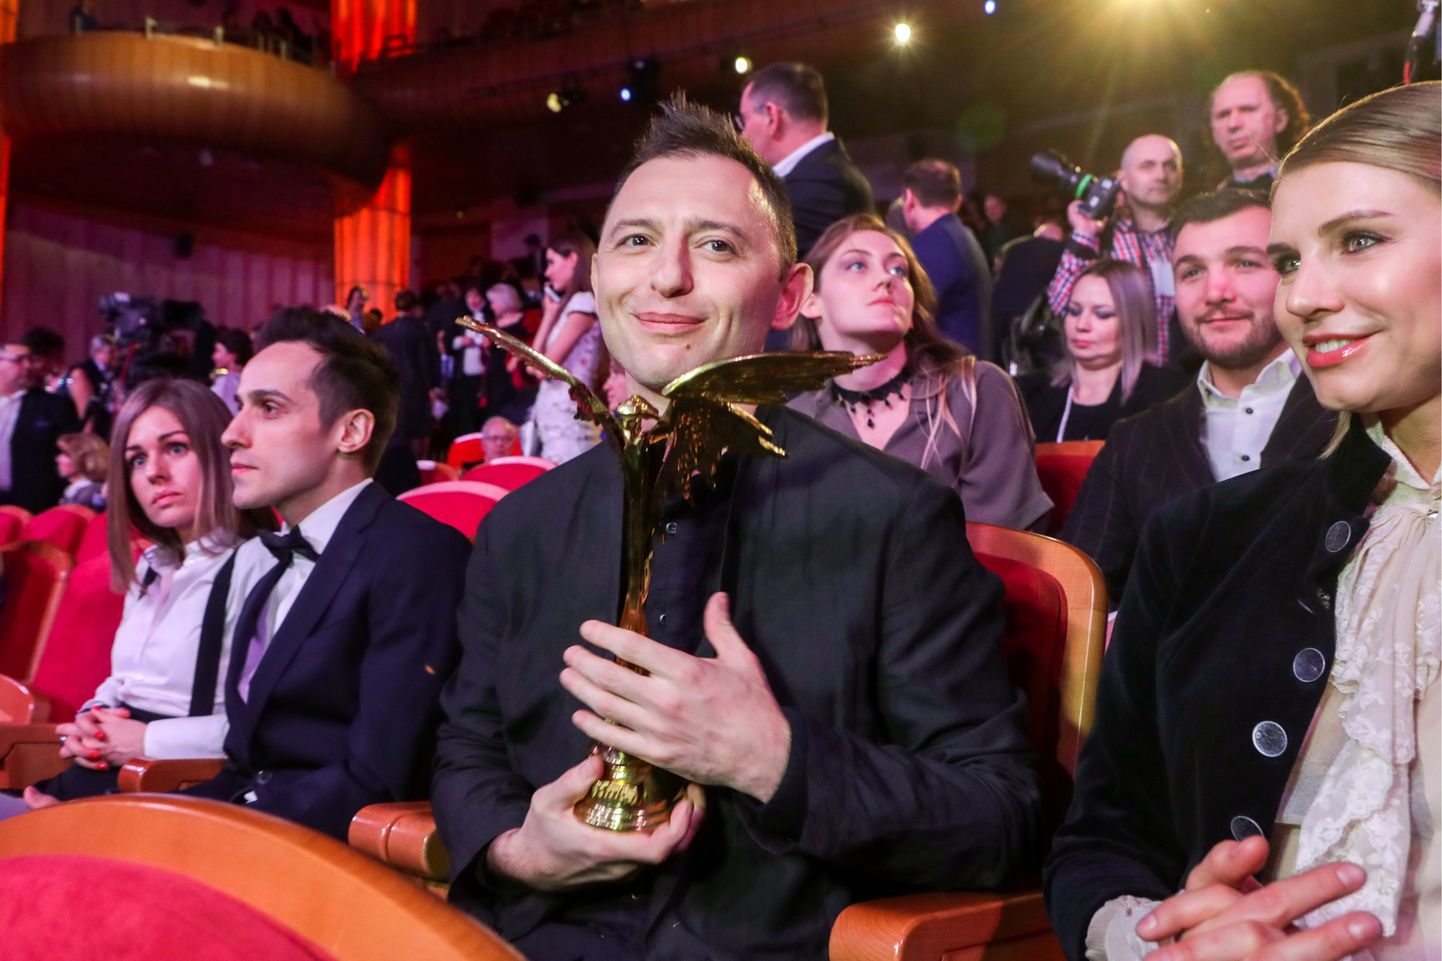 Рома Зверь на премии  "Ника" в 2109 году.
Артист получил награду в номинации "Открытие года" за роль в картине "Лето"